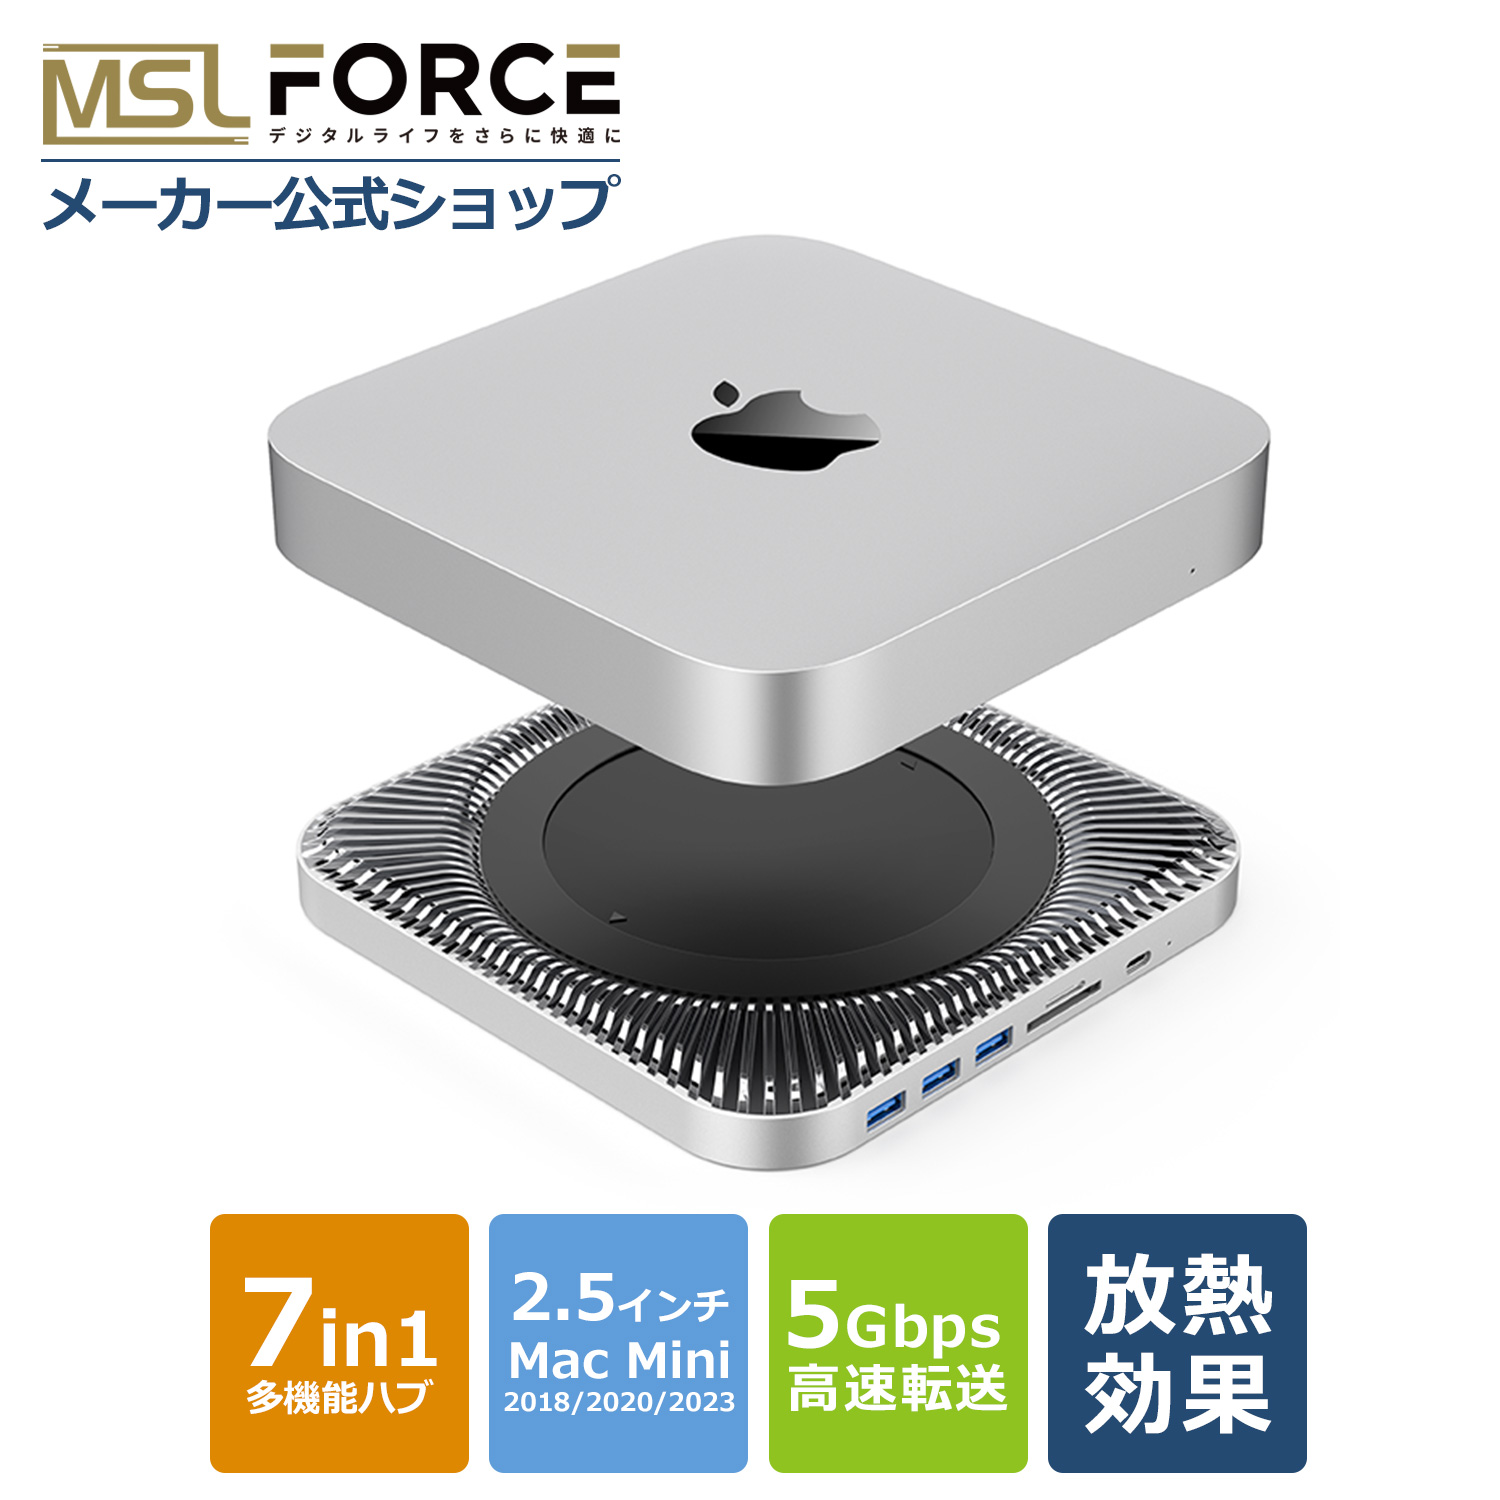 激安 激安特価 送料無料 本日最大600円引き Mac Mini用ハブ 7in1 放熱